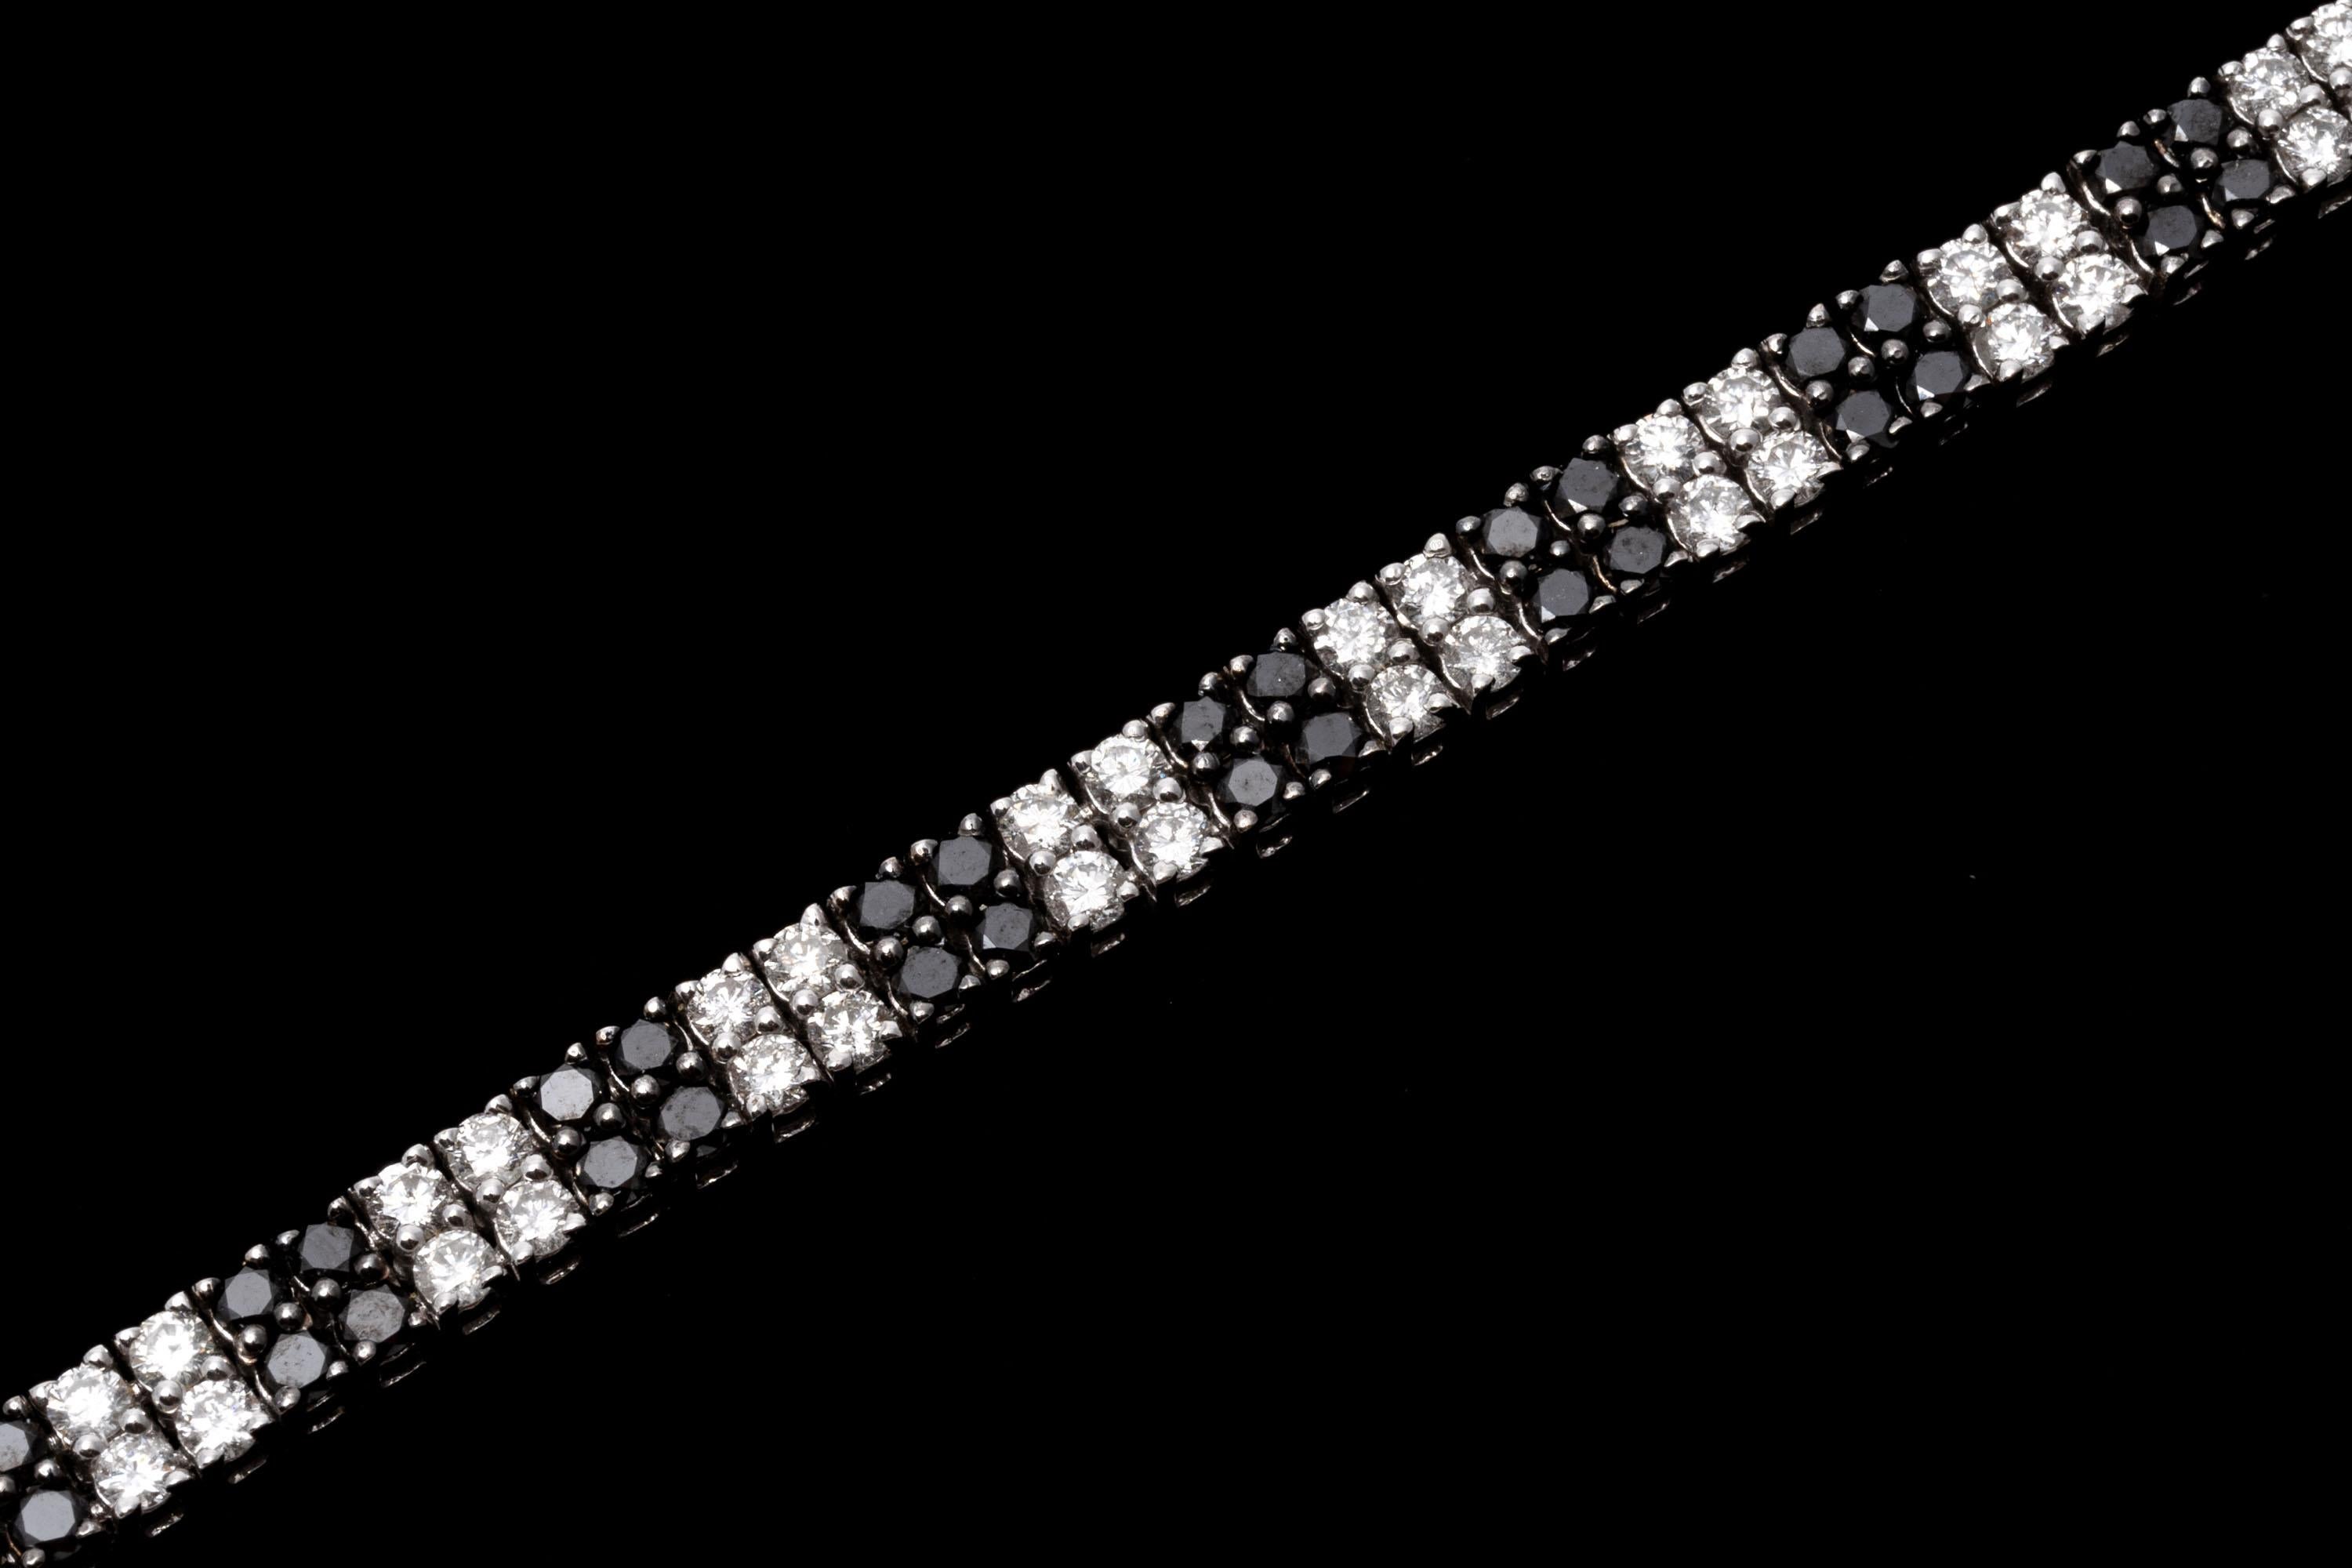 Faites une déclaration élégante avec ce superbe bracelet ligne. Fabriqué en or blanc 14 carats, ce bracelet est serti de diamants noirs et blancs alternés qui créent un contraste magnifique et accrocheur. Les diamants sont approximativement 5.18